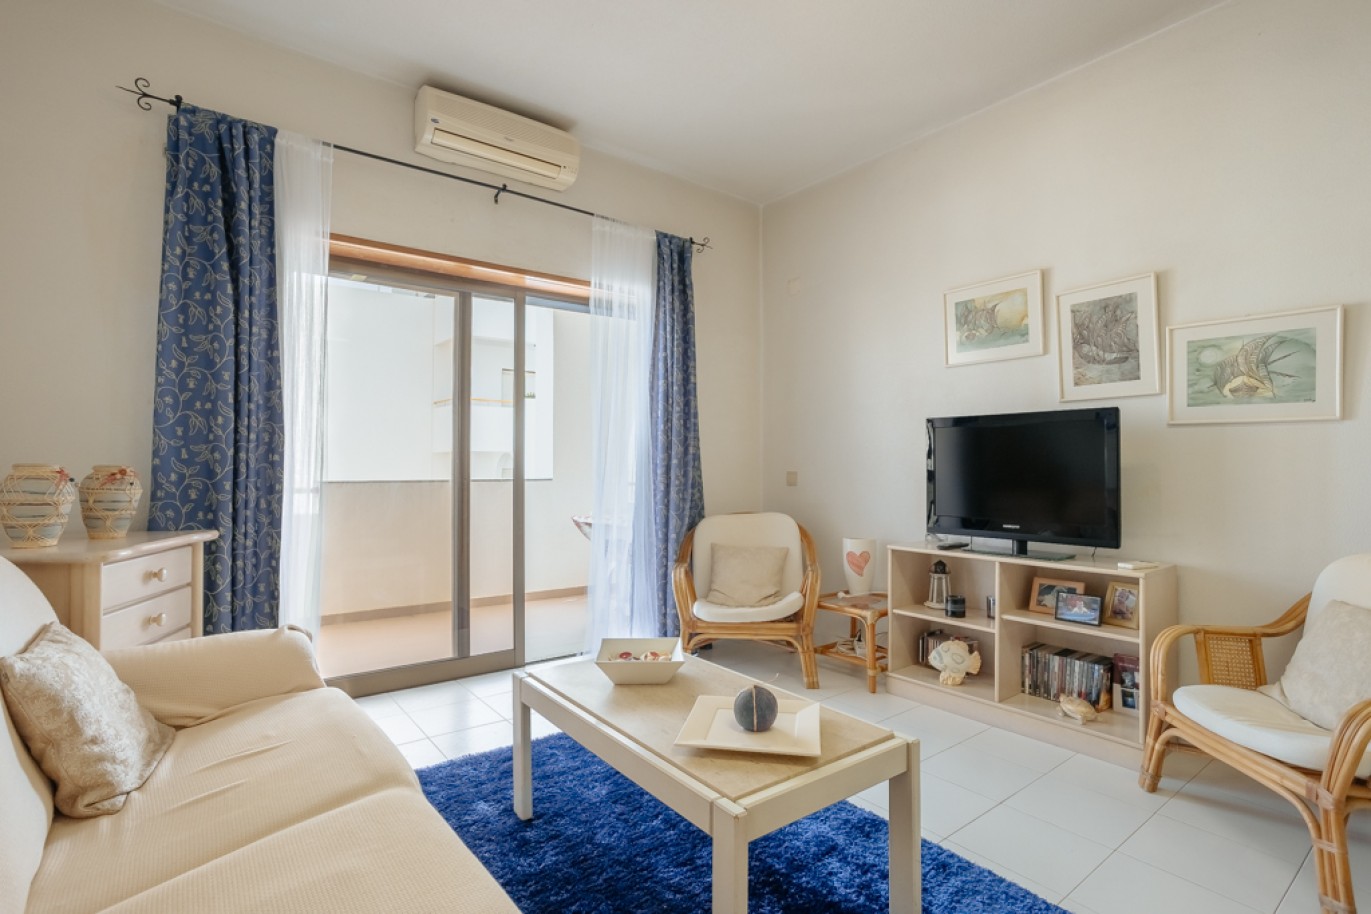 Apartamento com 1+1 quartos, com vista mar, para venda em Porches, Algarve_257046